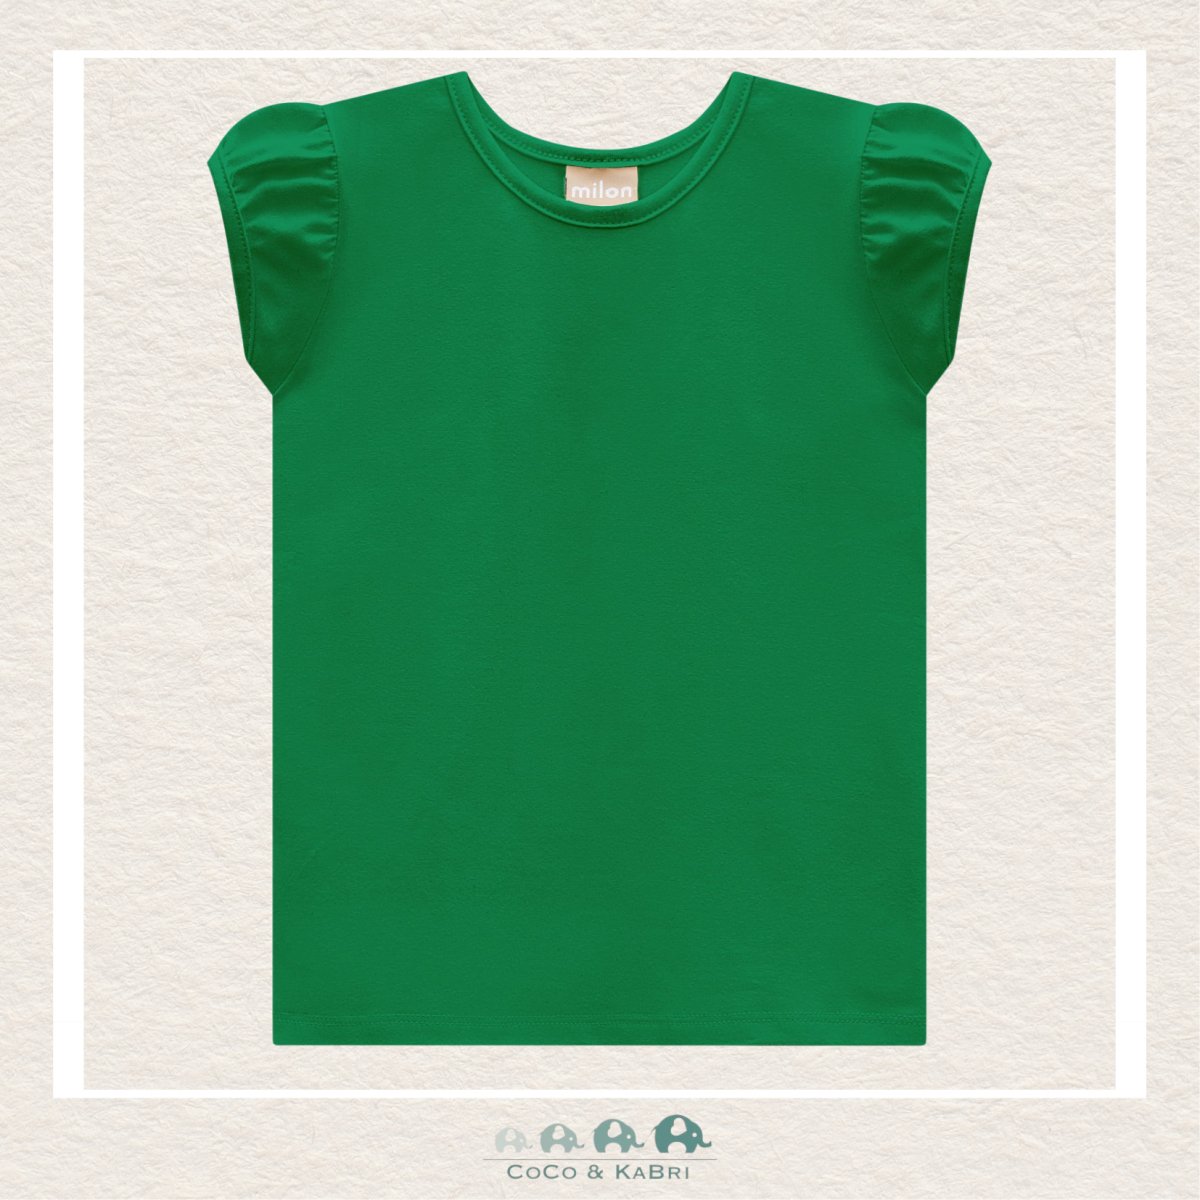 Milon Girls Green Tshirt, CoCo & KaBri Children's Boutique